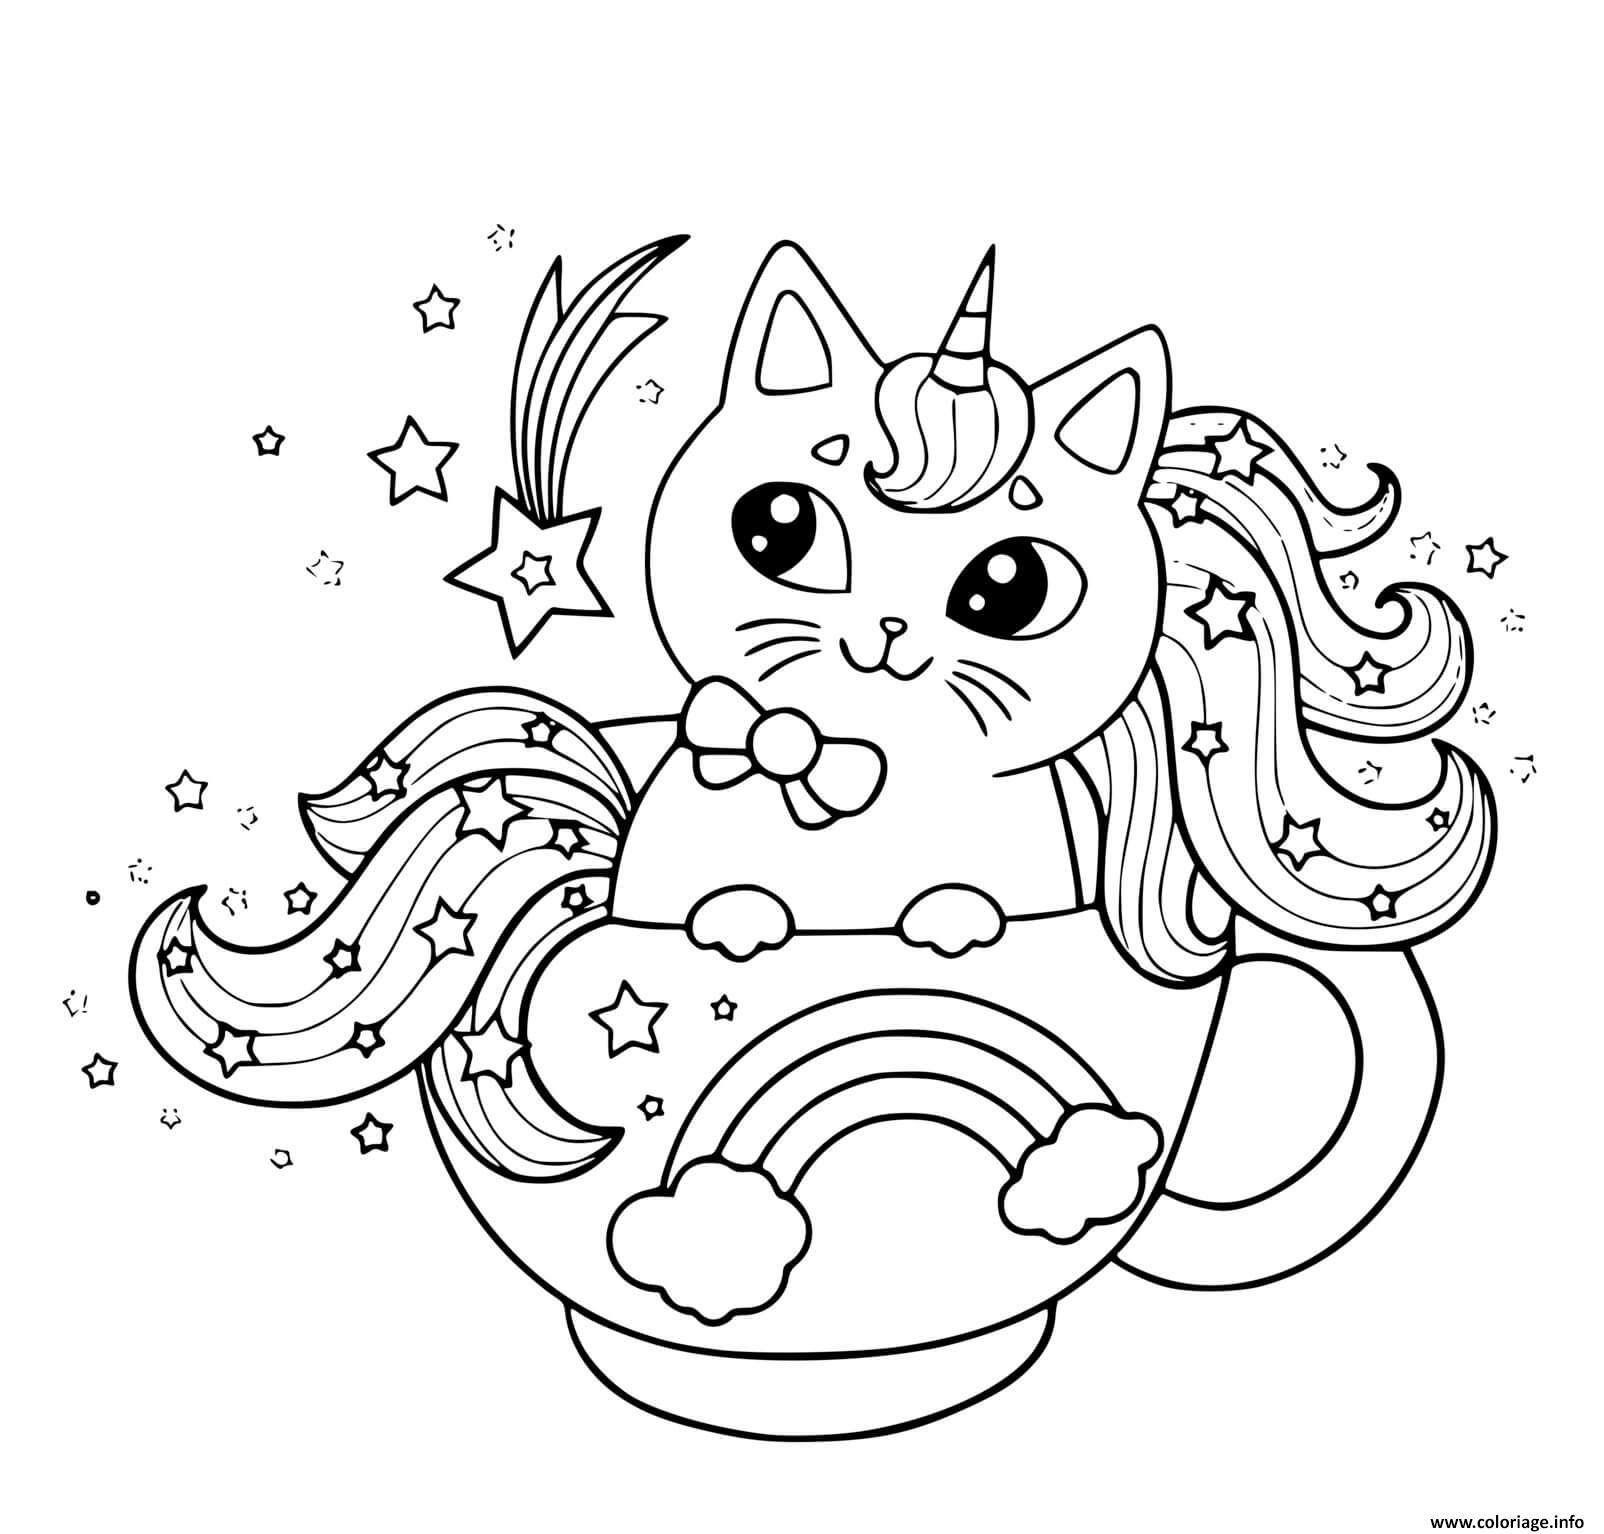 Dessin chat licorne tasse de cafe magique Coloriage Gratuit à Imprimer